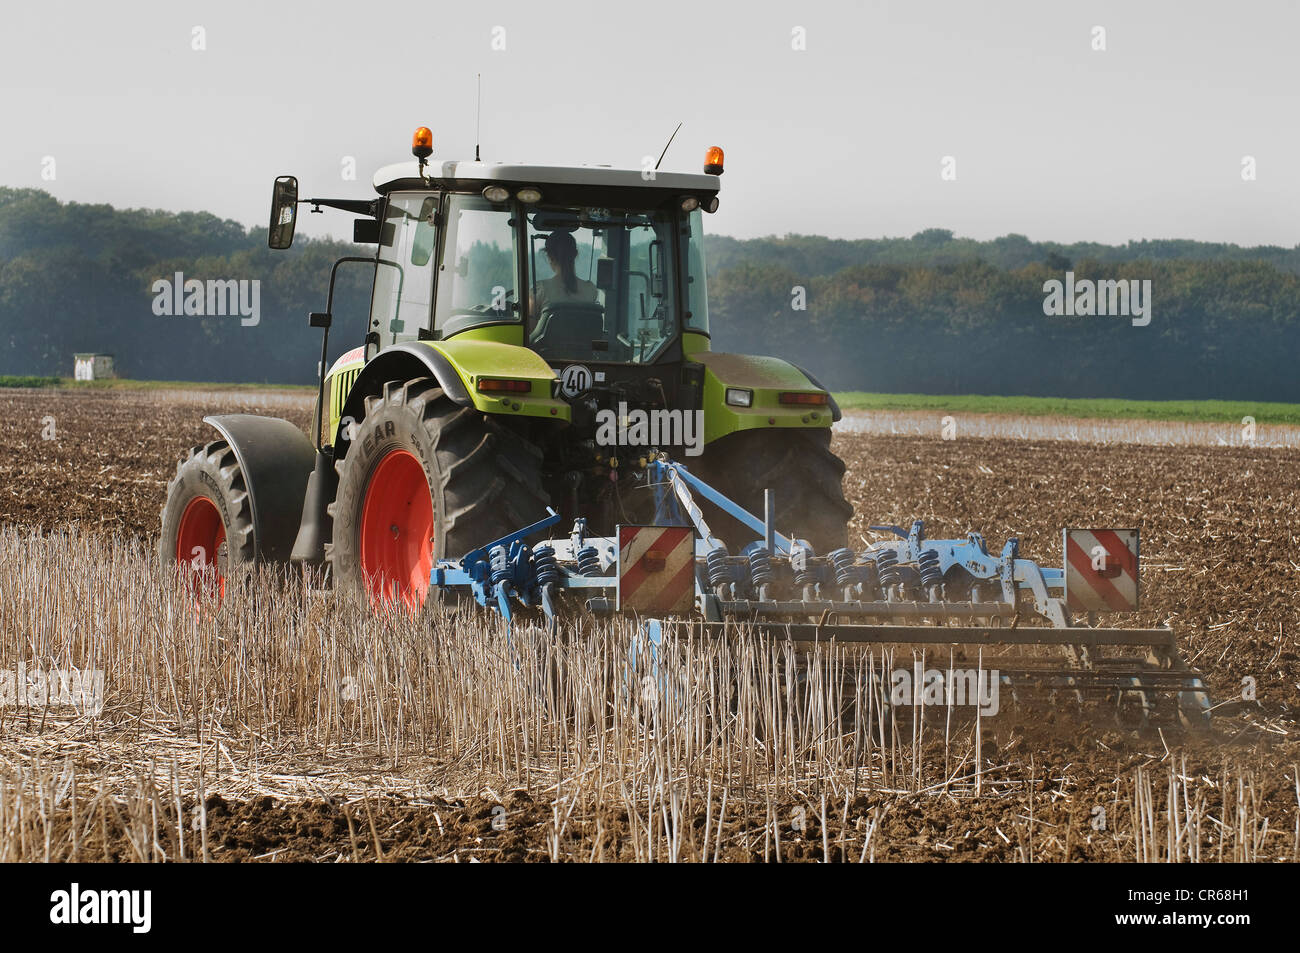 Tracteur avec un cultivateur de la conduite sur un champ moissonné, le sol est suscité et pulvérisé, demeure de plantes sont Banque D'Images